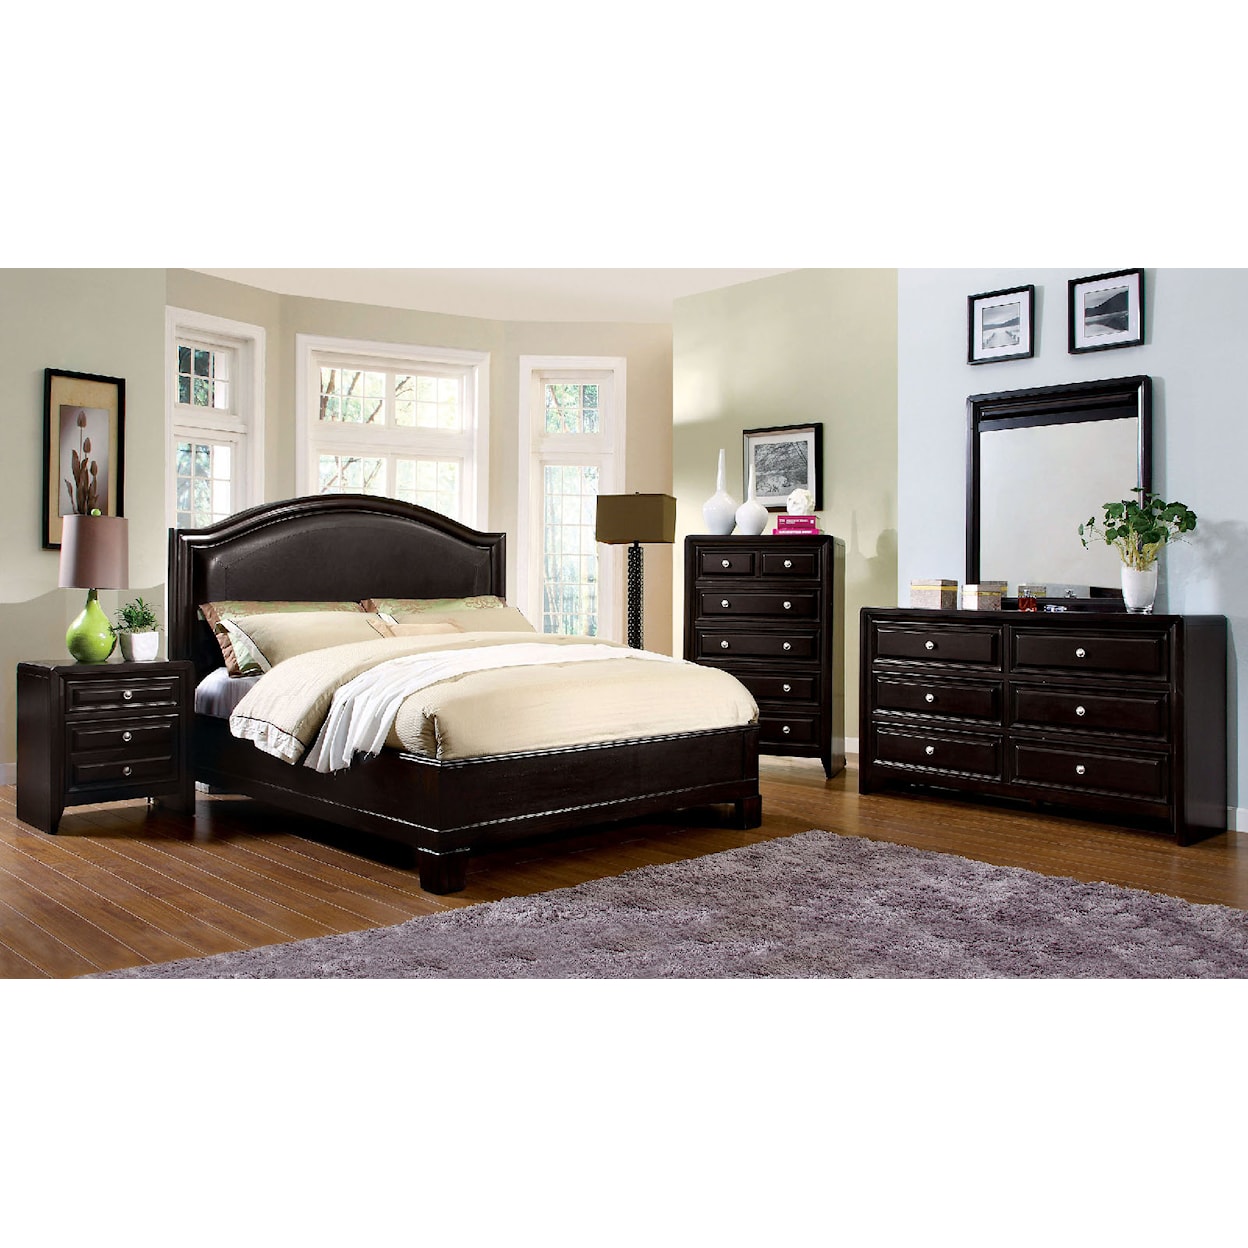 Furniture of America Winsor 4-Piece Queen Bedroom Set 